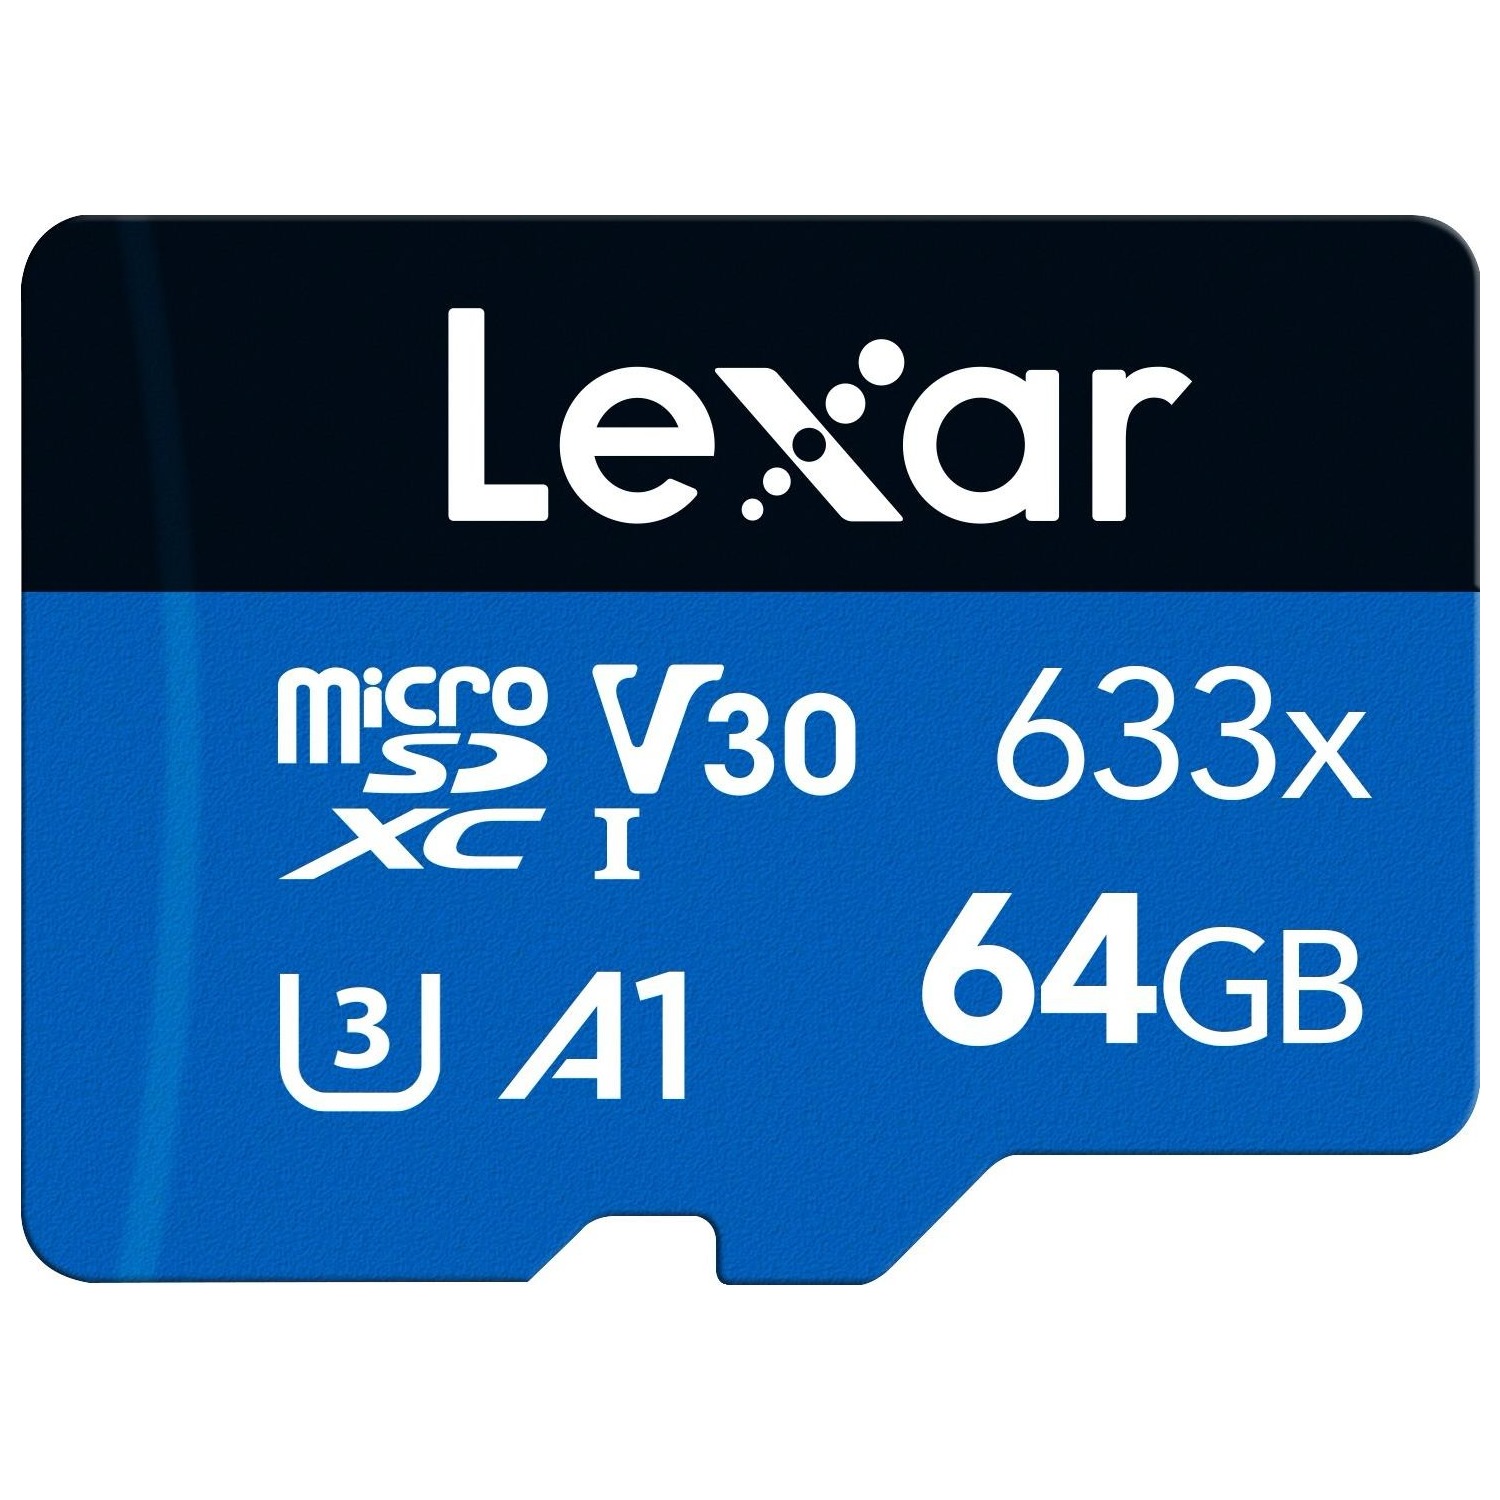 Immagine per MicroSD Lexar 633X 64GB senza adattatore da DIMOStore